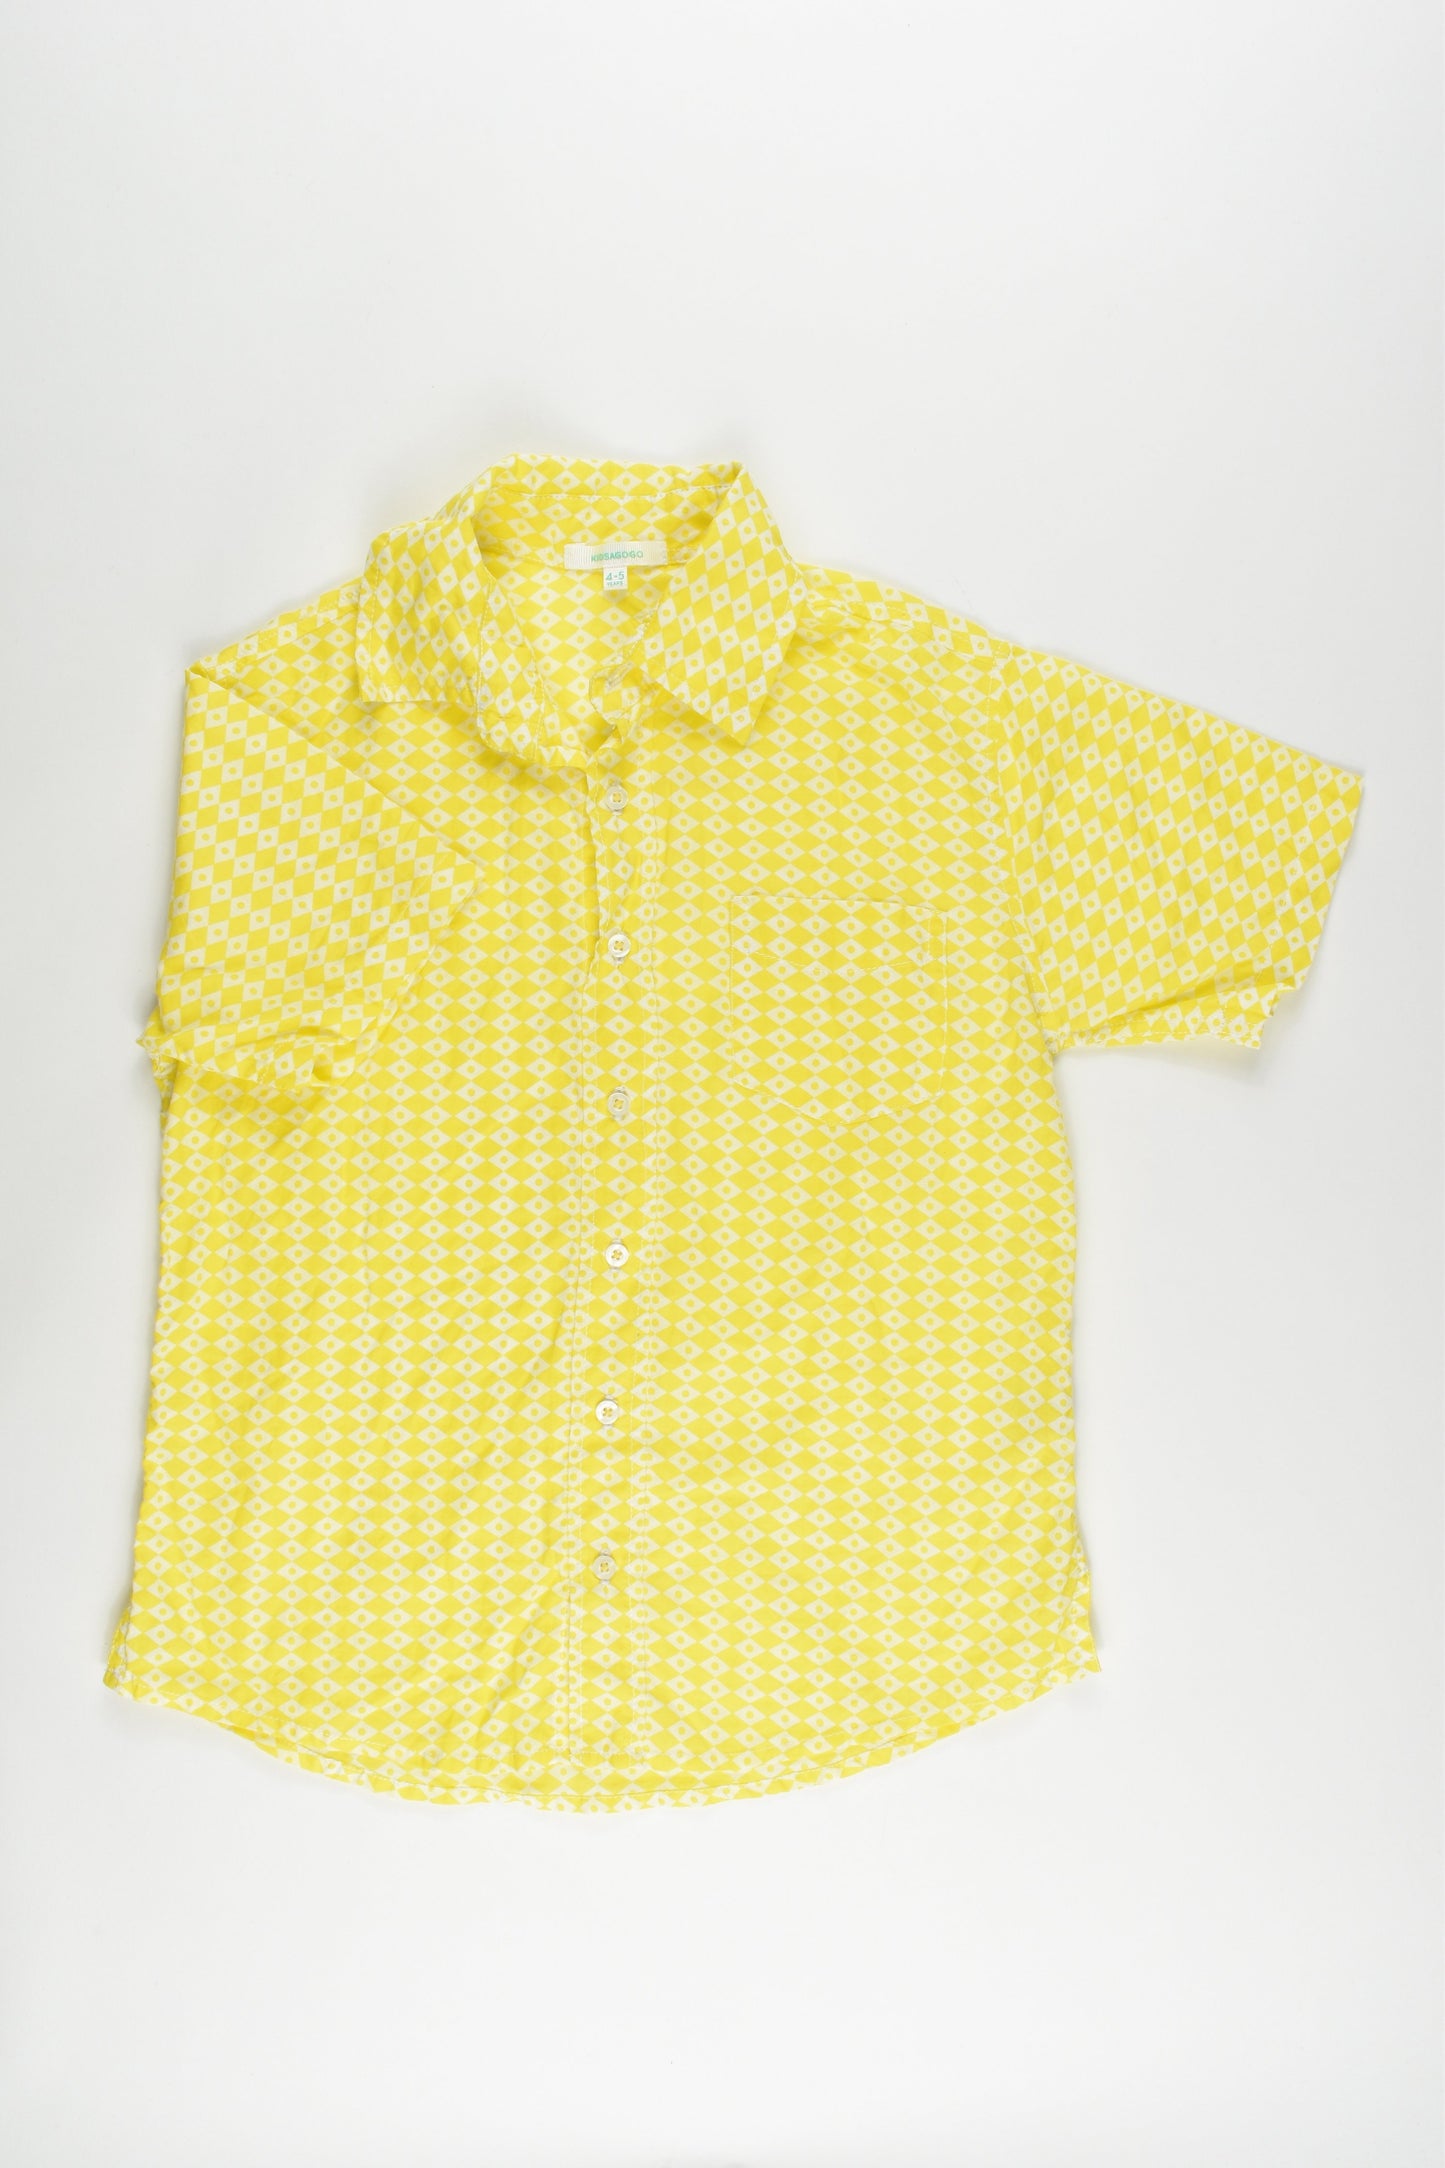 Kidsagogo Size 4-5 Collared Shirt